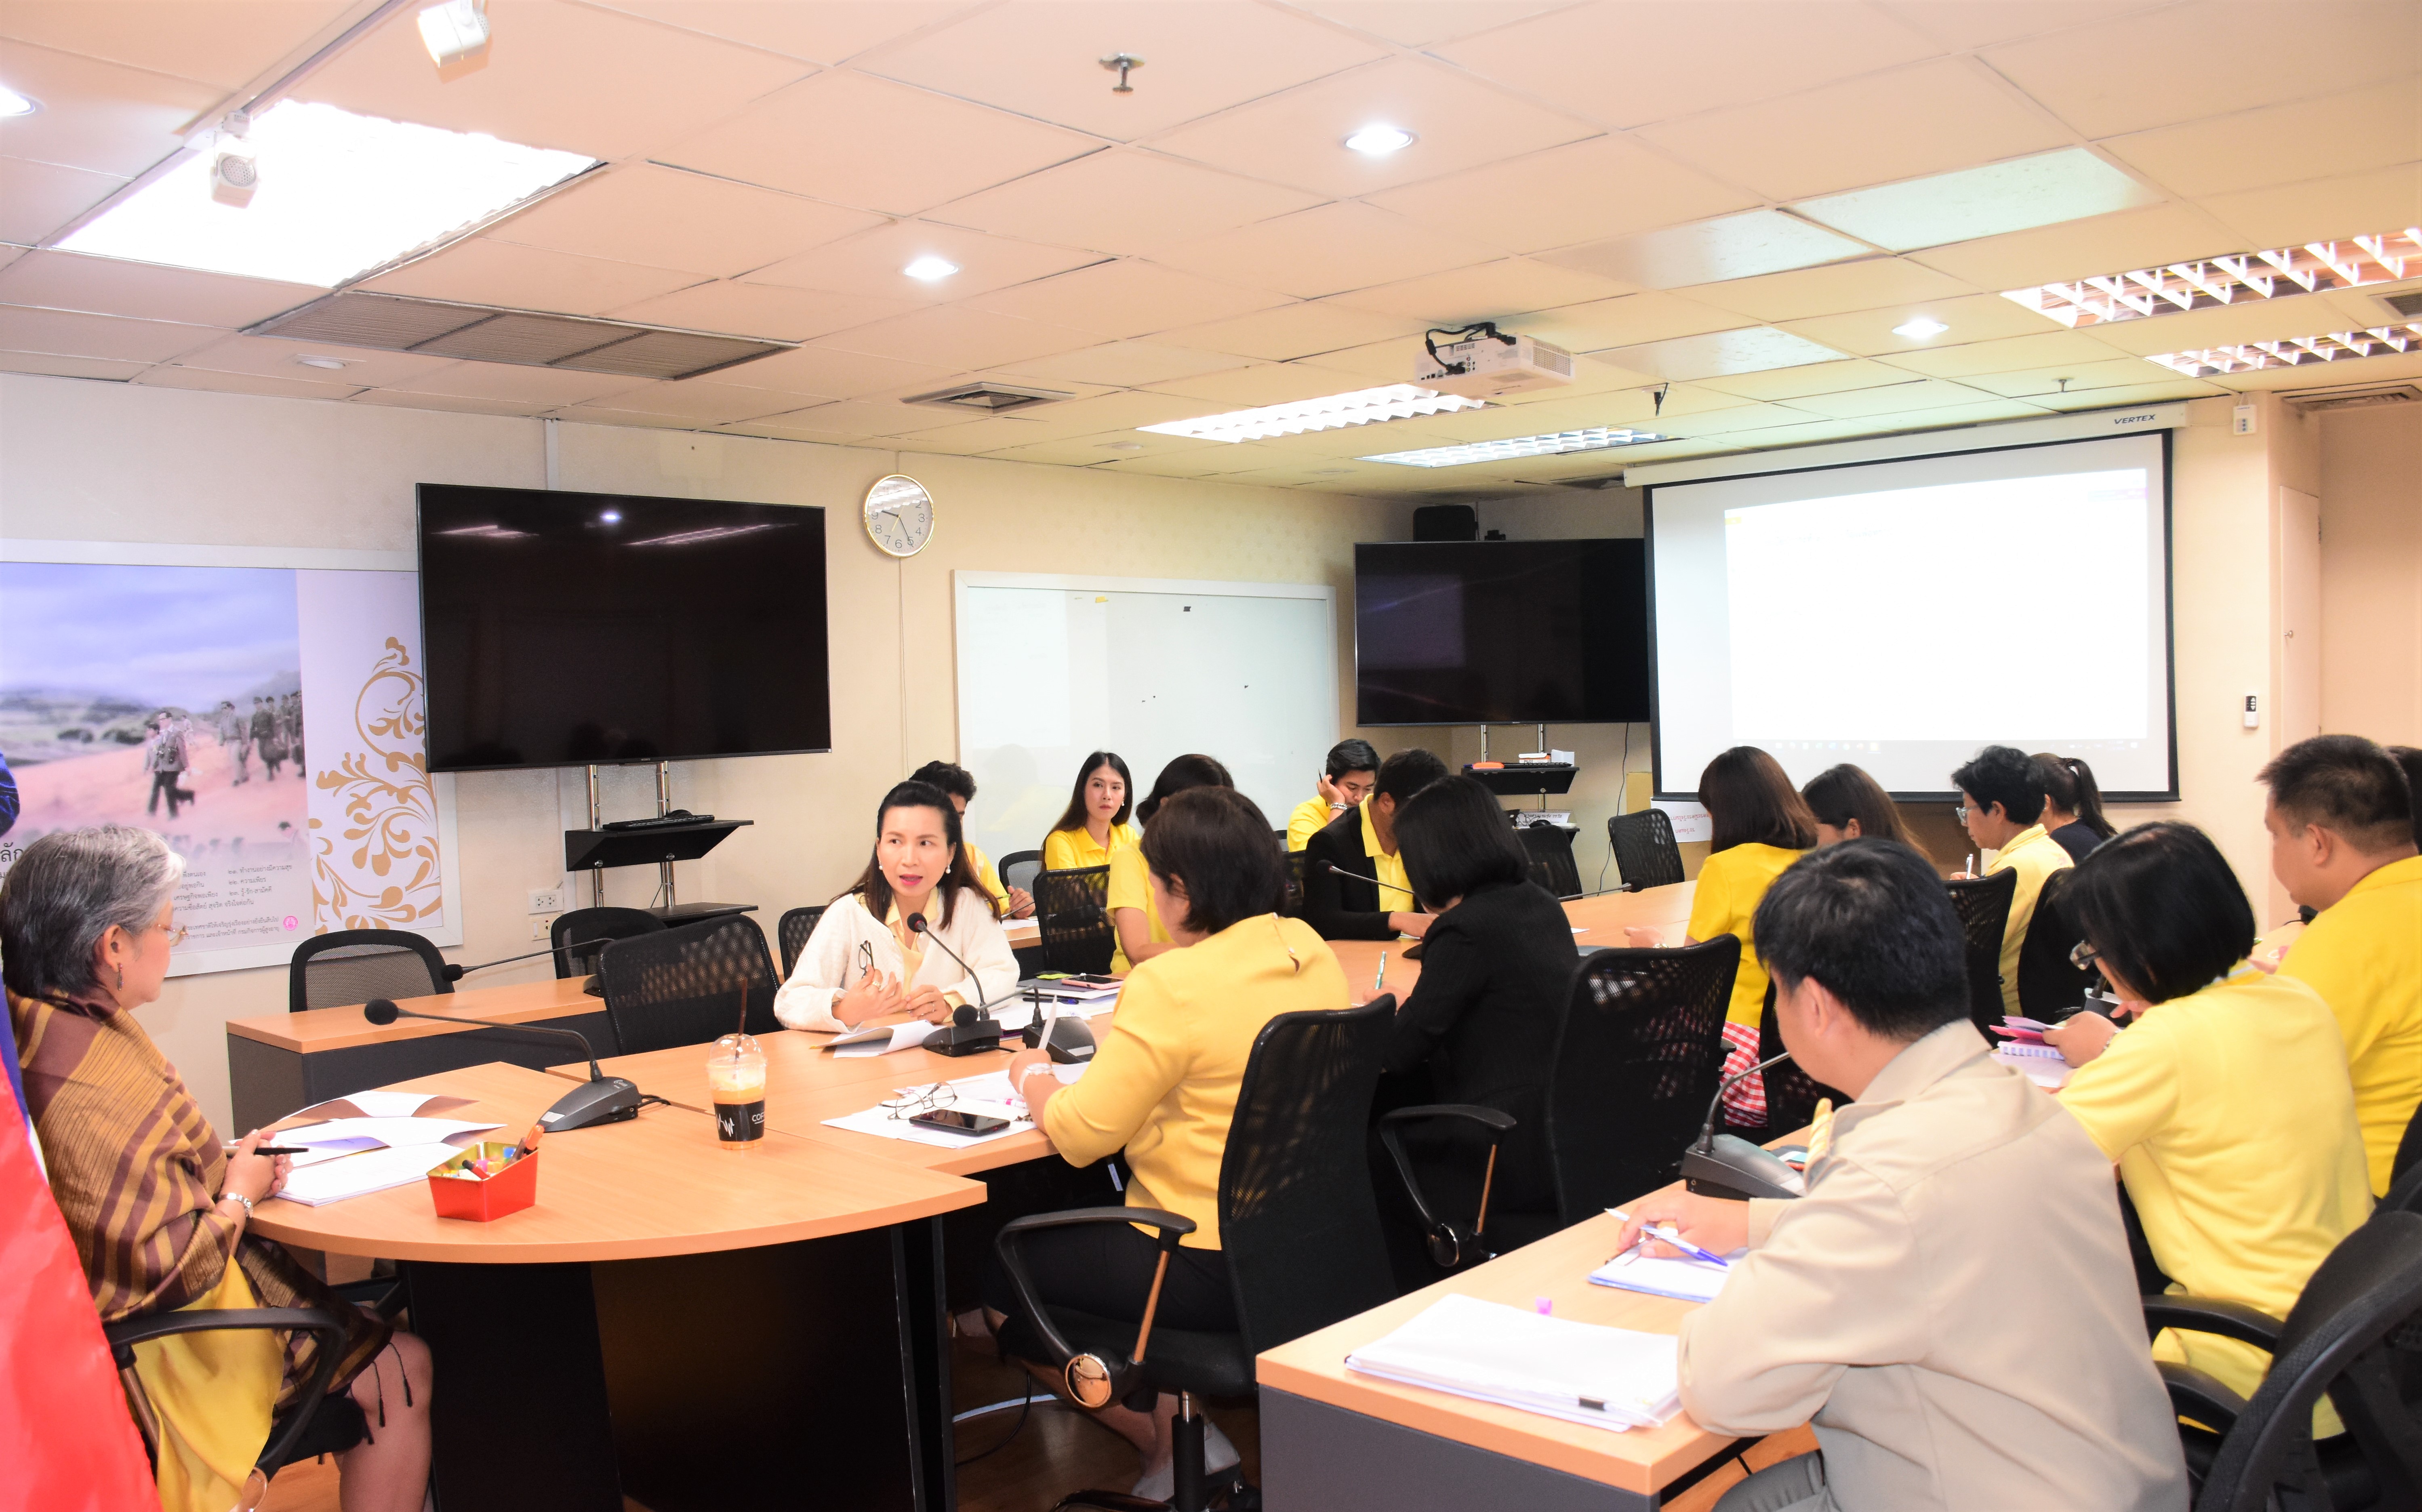 ประชุมติดตามความก้าวหน้าการเตรียมการจัดงาน  “ Thailand Social Expo 2019 ร่วมกับคณะทำงานฝ่ายต่างๆของกรมกิจการผู้สูงอายุ 